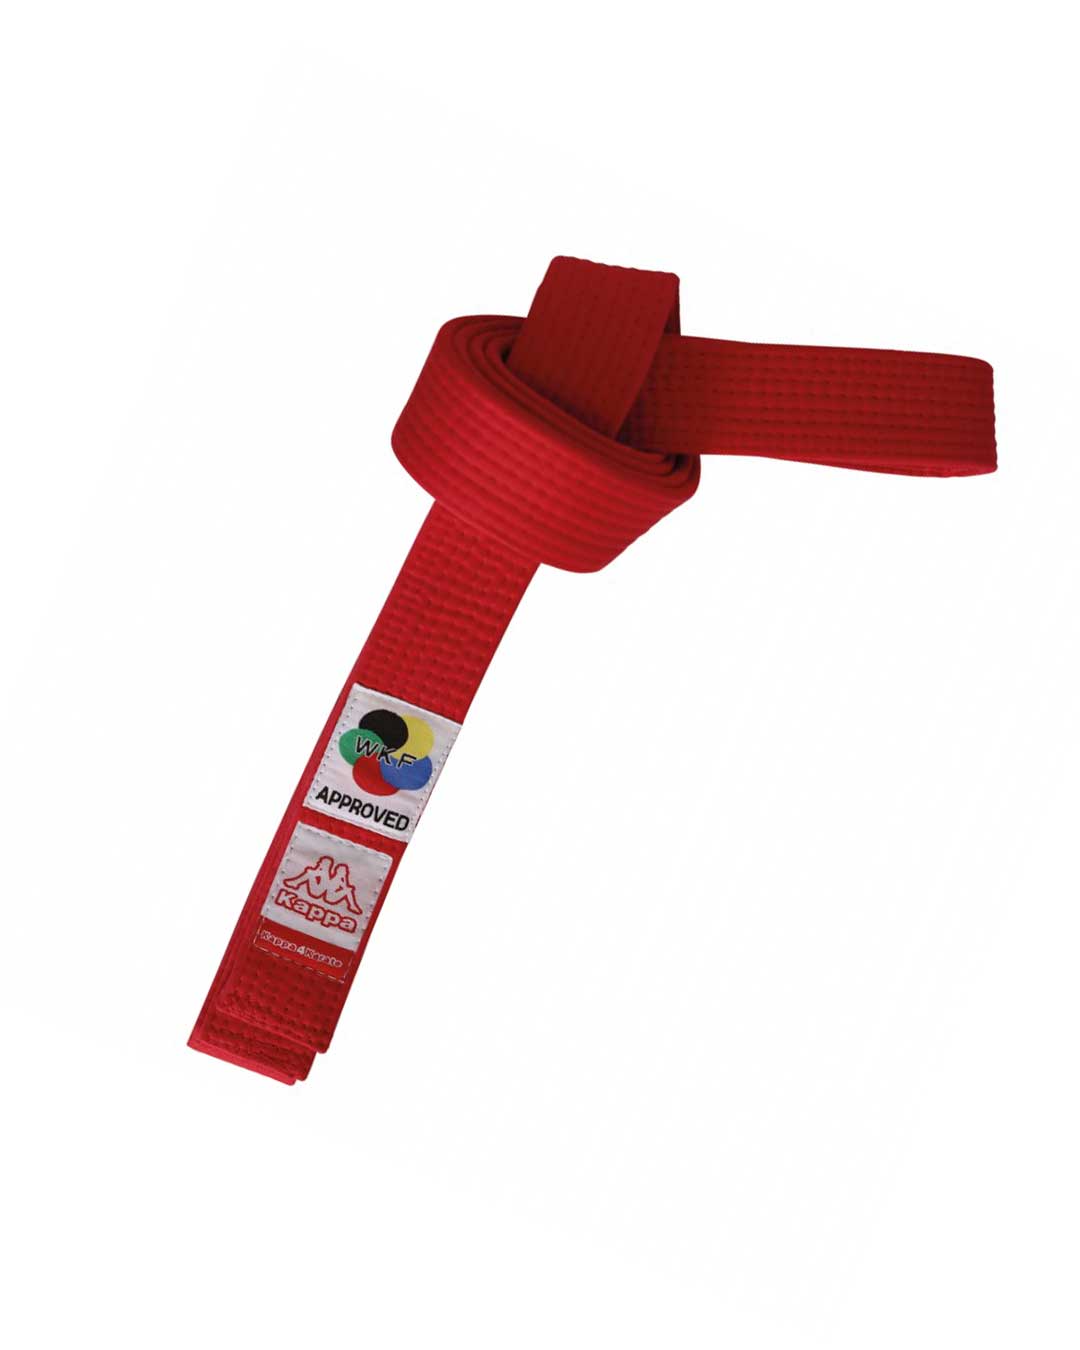 Cinturón kappa modelo Sparta certificado WKF n° 5 color rojo